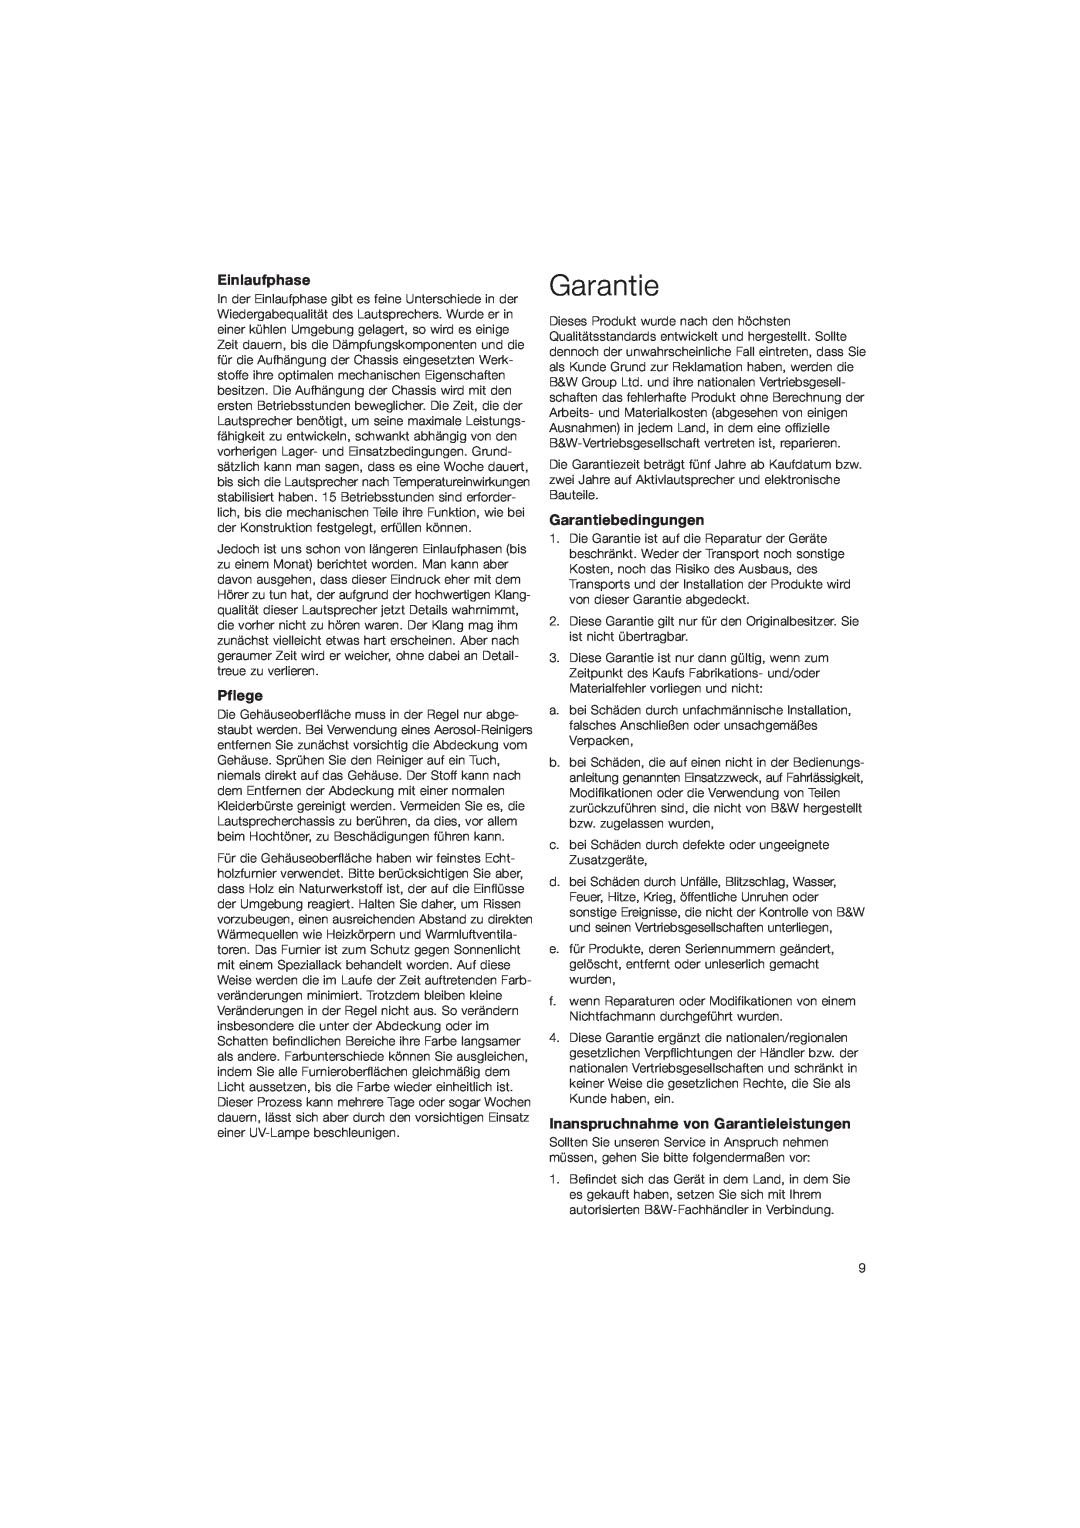 Bowers & Wilkins CM9 owner manual Einlaufphase, Pflege, Garantiebedingungen, Inanspruchnahme von Garantieleistungen 